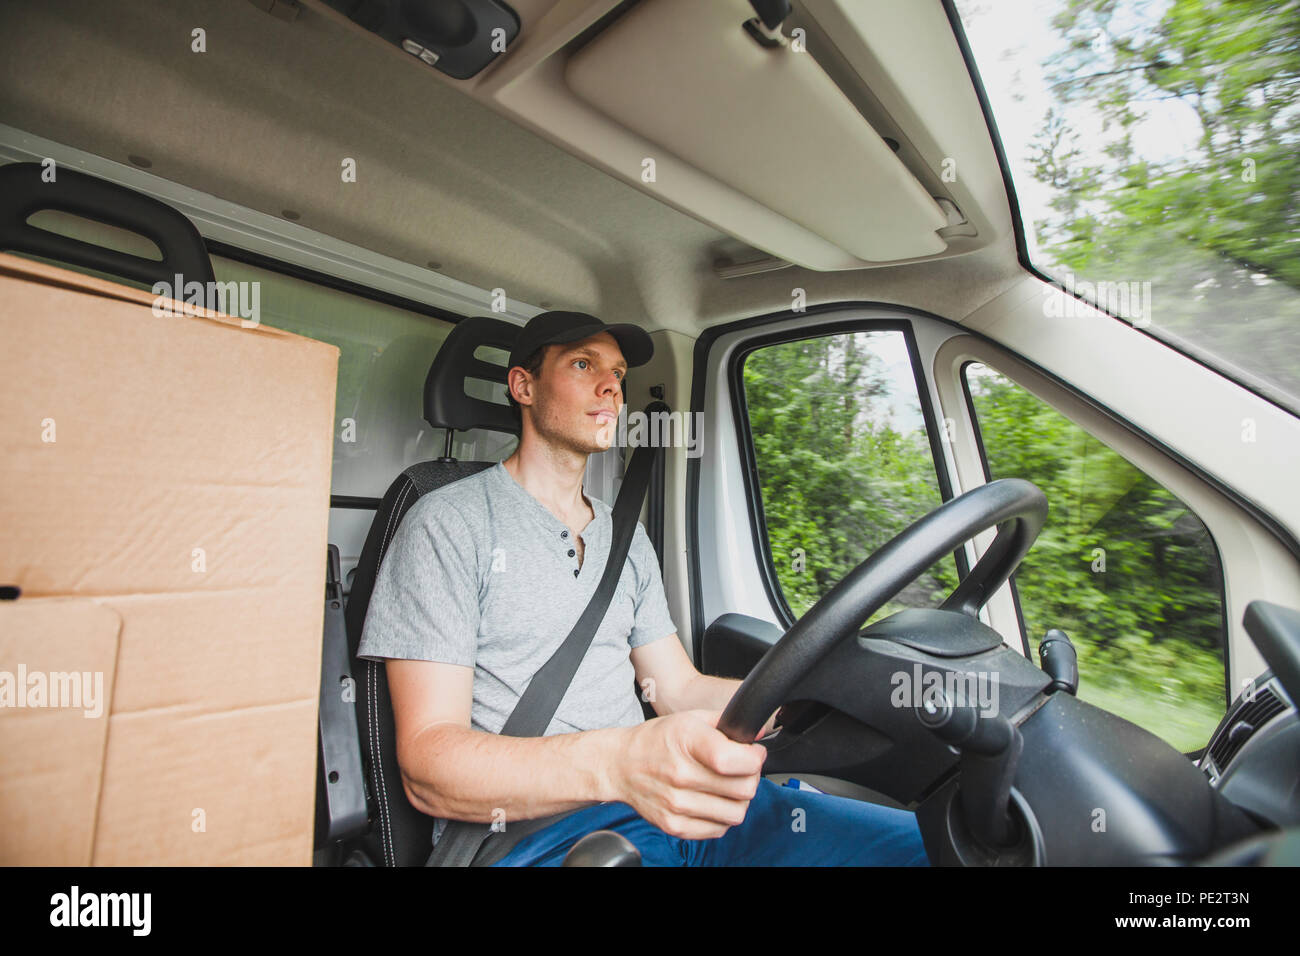 Chauffeur Homme conduisant des camions de livraison de location de véhicule, service de livraison de colis, le transport de fret d'occupation Banque D'Images